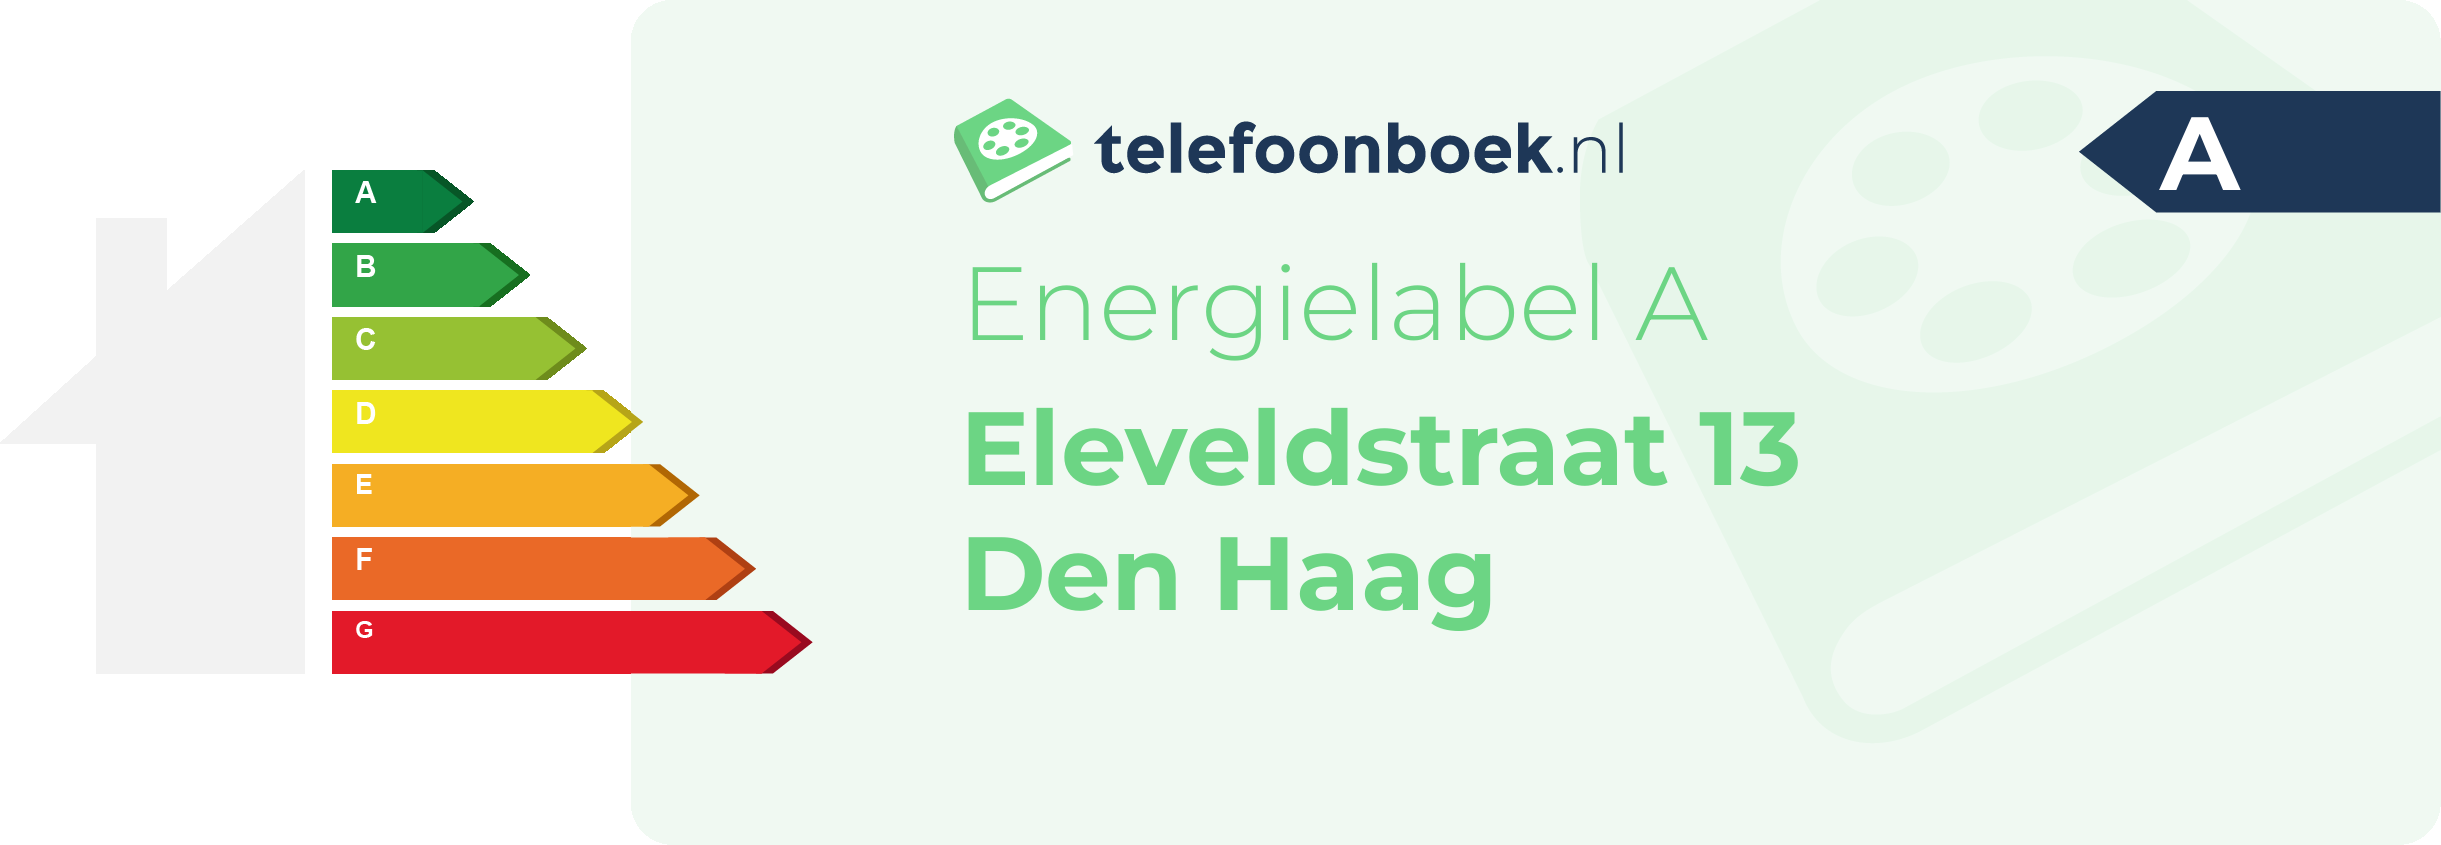 Energielabel Eleveldstraat 13 Den Haag